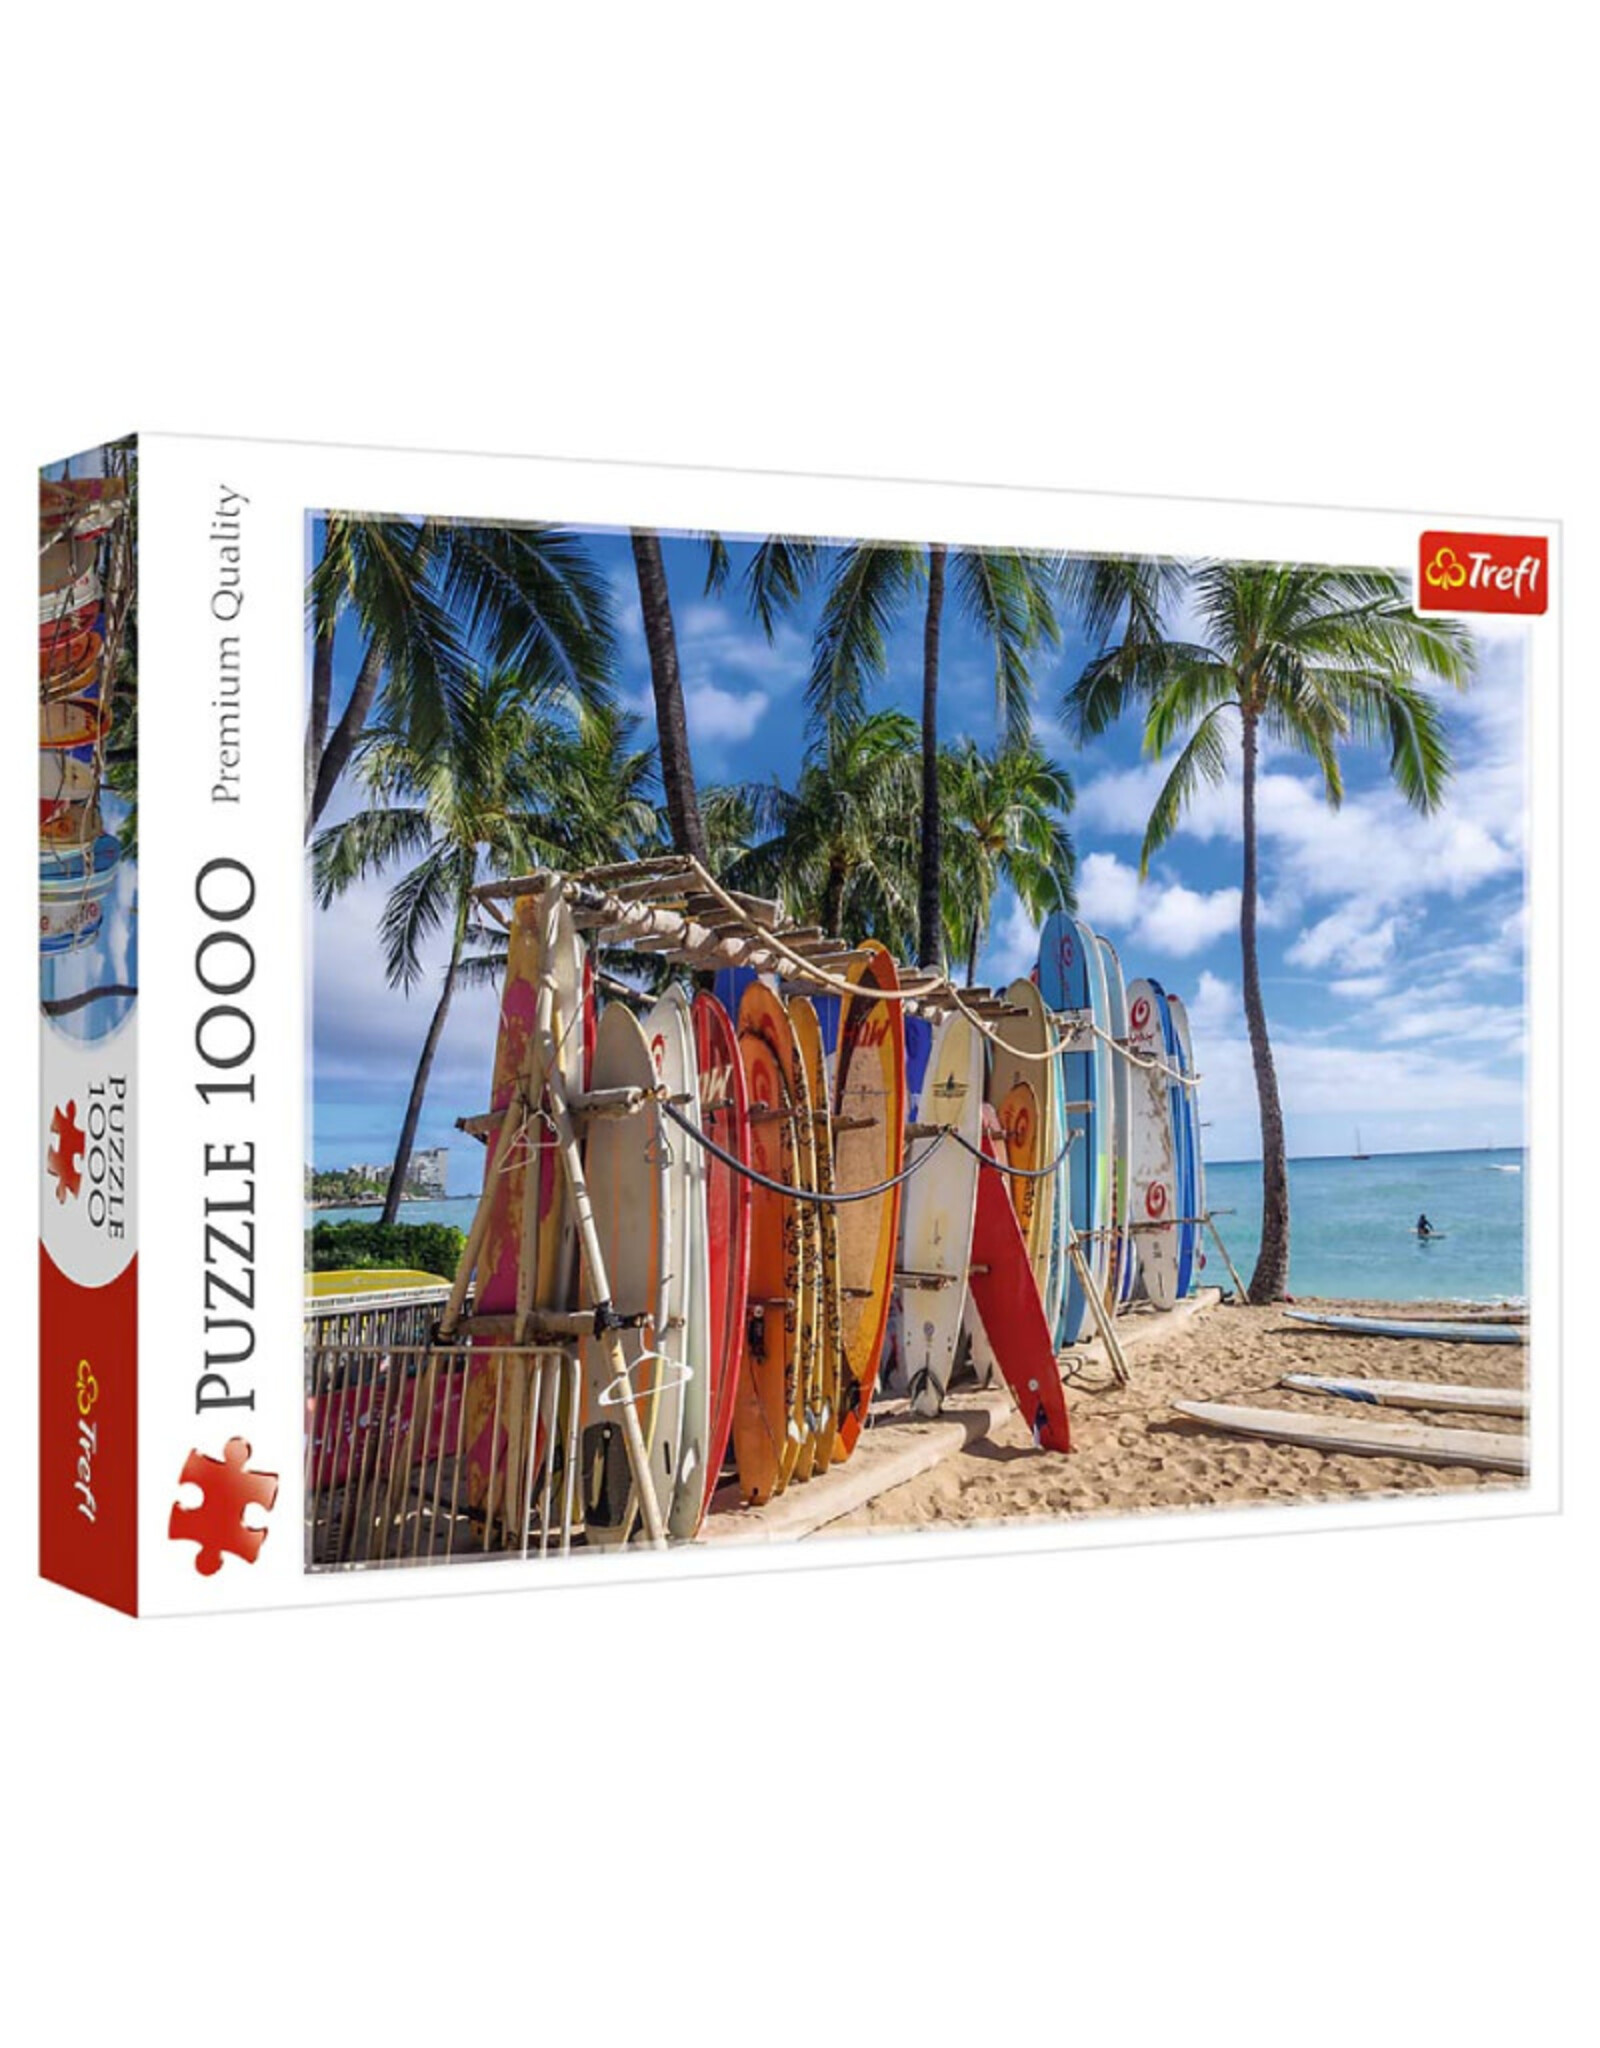 Trefl Waikiki Beach Puzzle 1000 PCS